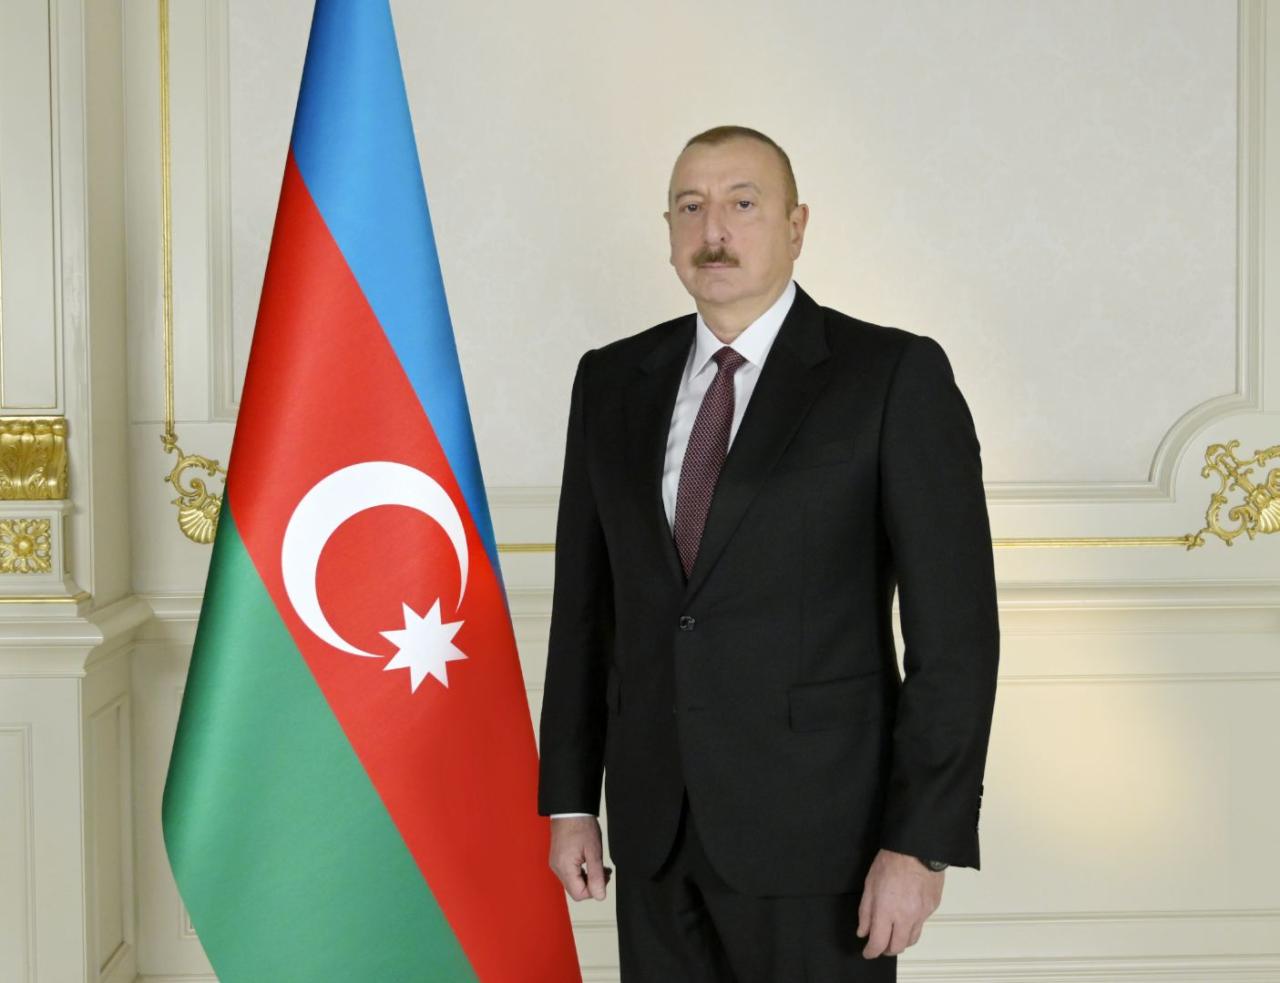 Former President of Bulgaria sends letter to President Ilham Aliyev